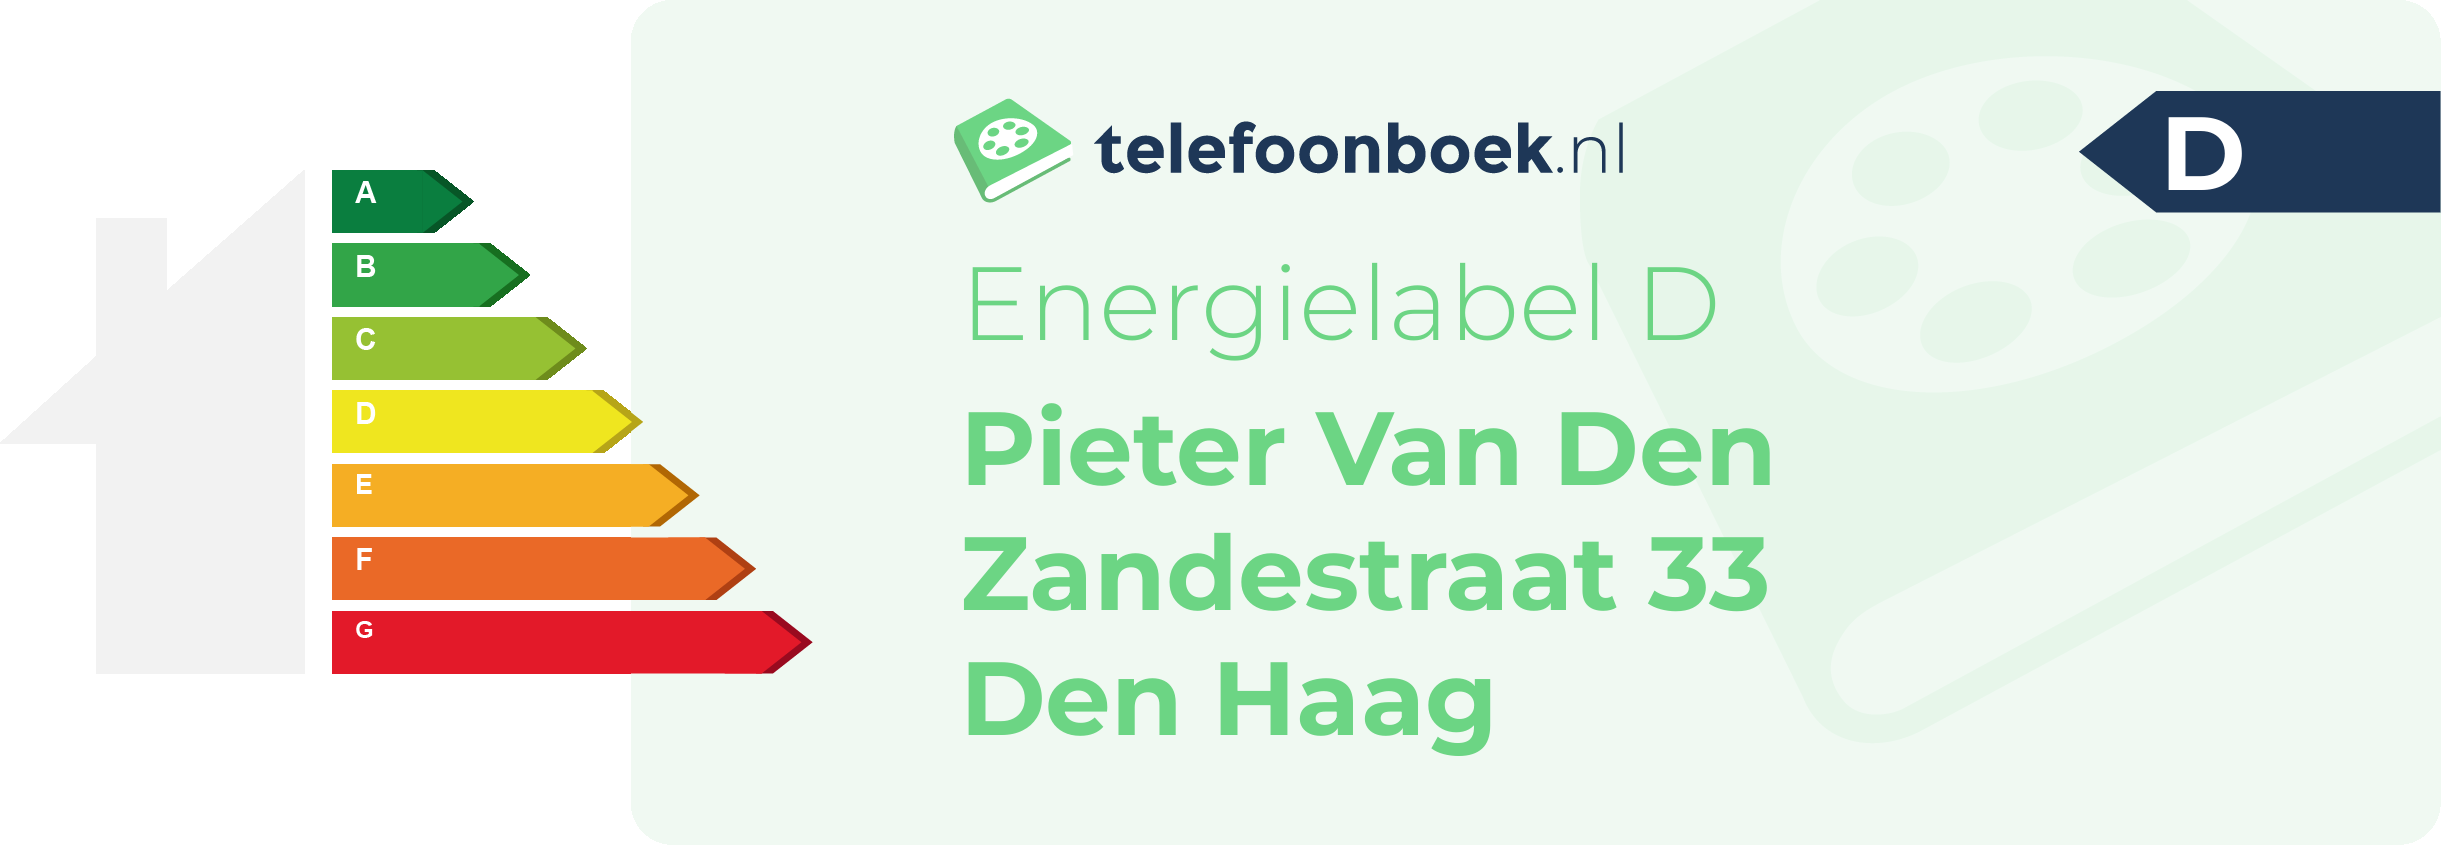 Energielabel Pieter Van Den Zandestraat 33 Den Haag